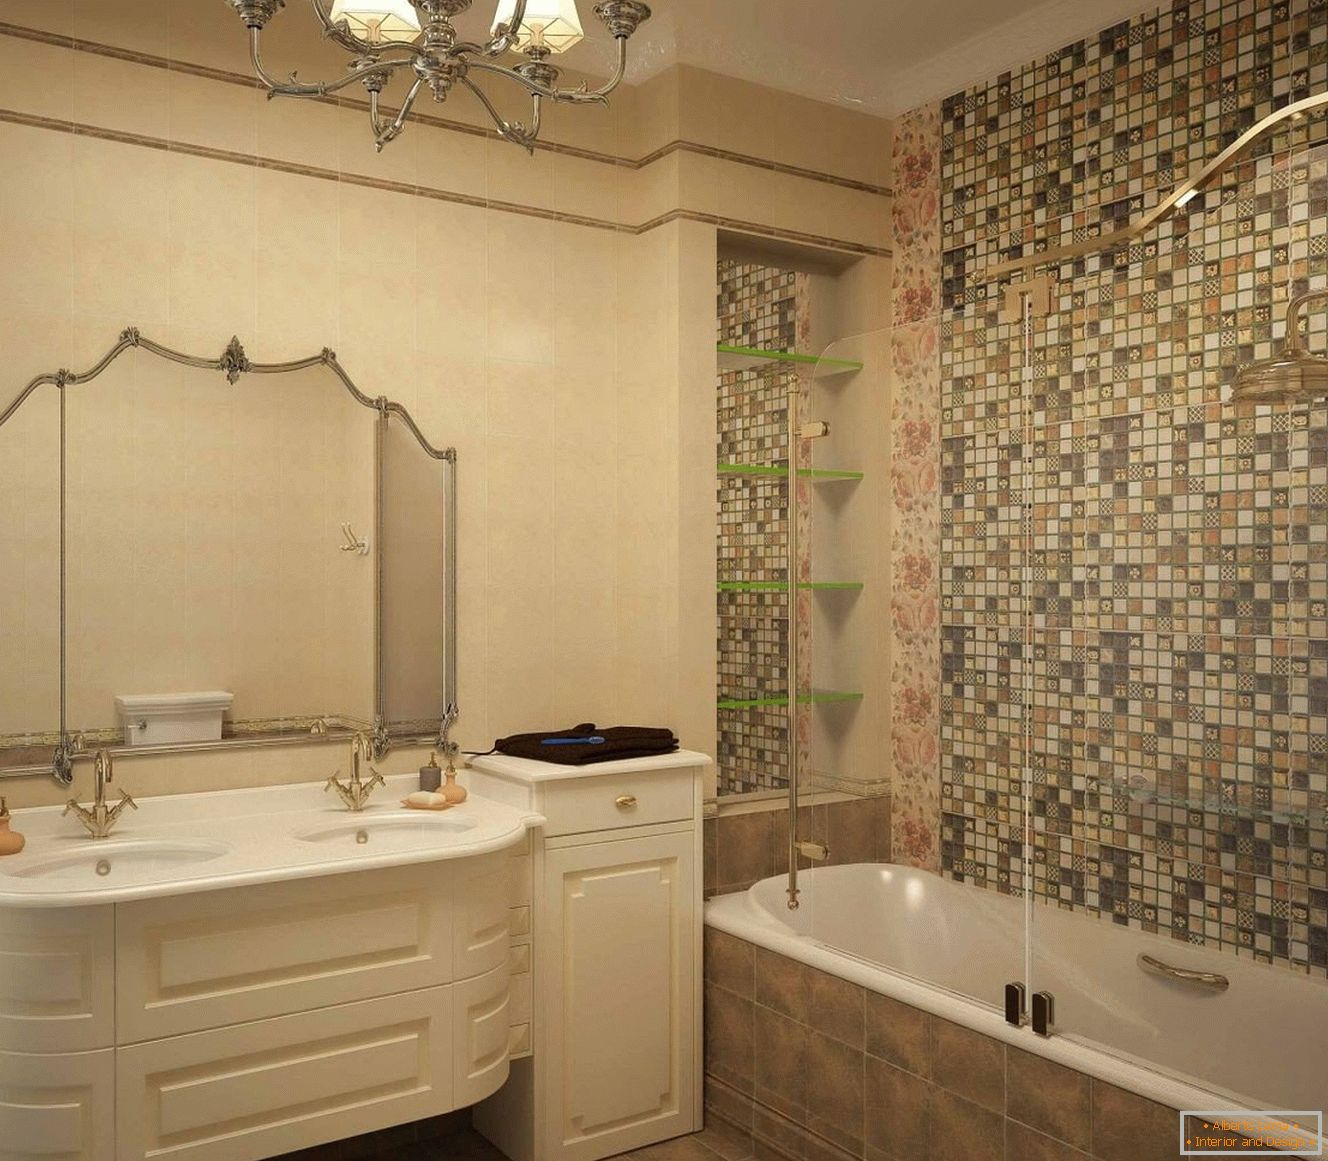 Interior del baño en estilo clásico